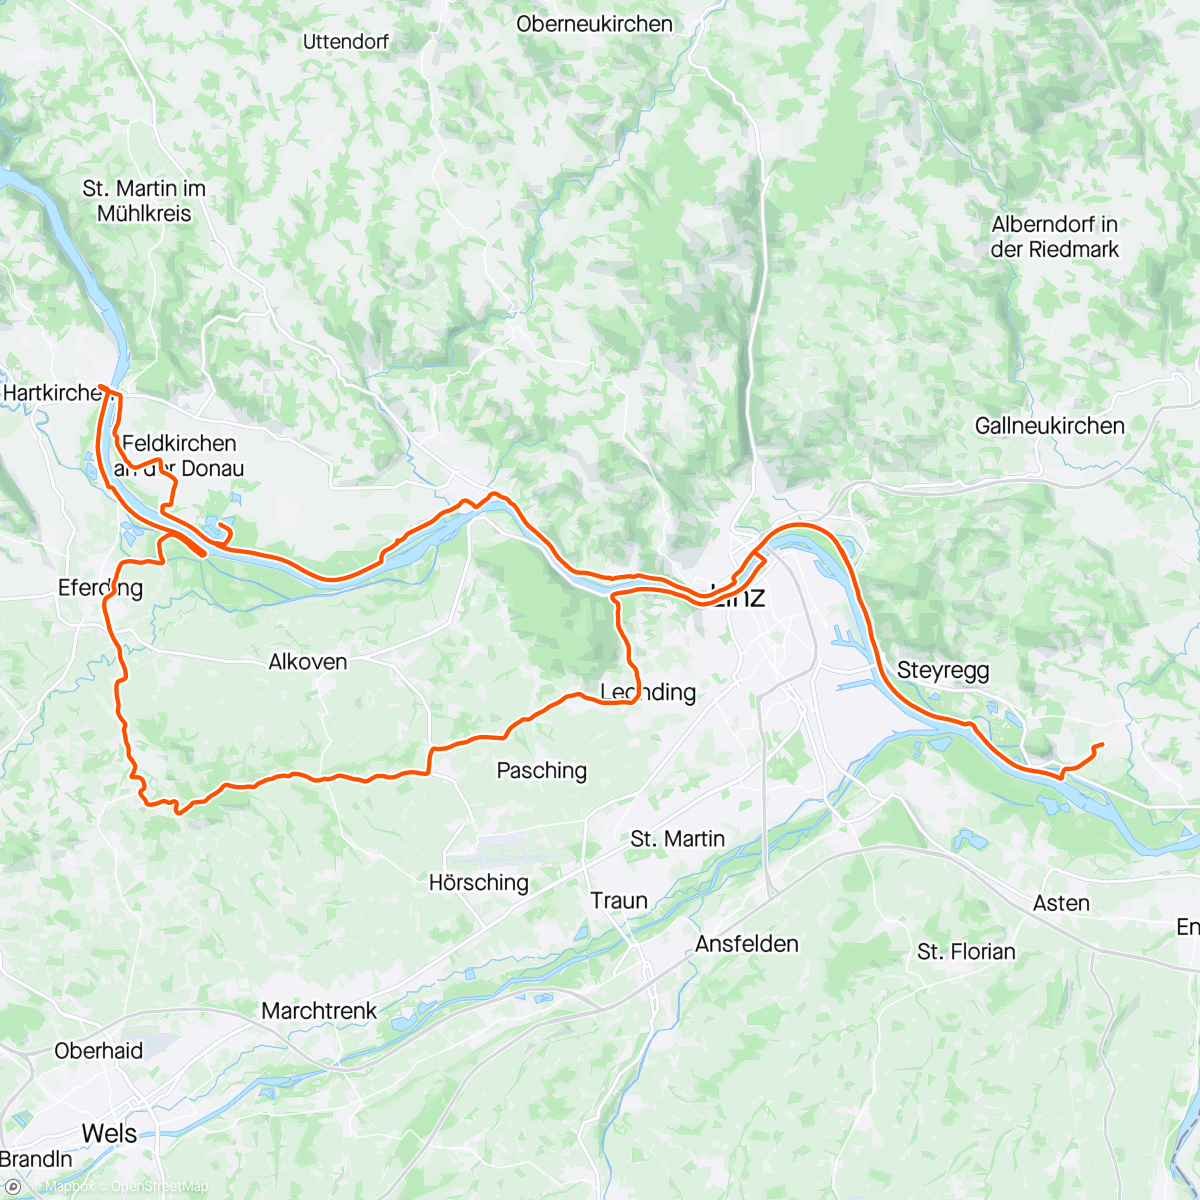 「Kirschblüten」活動的地圖